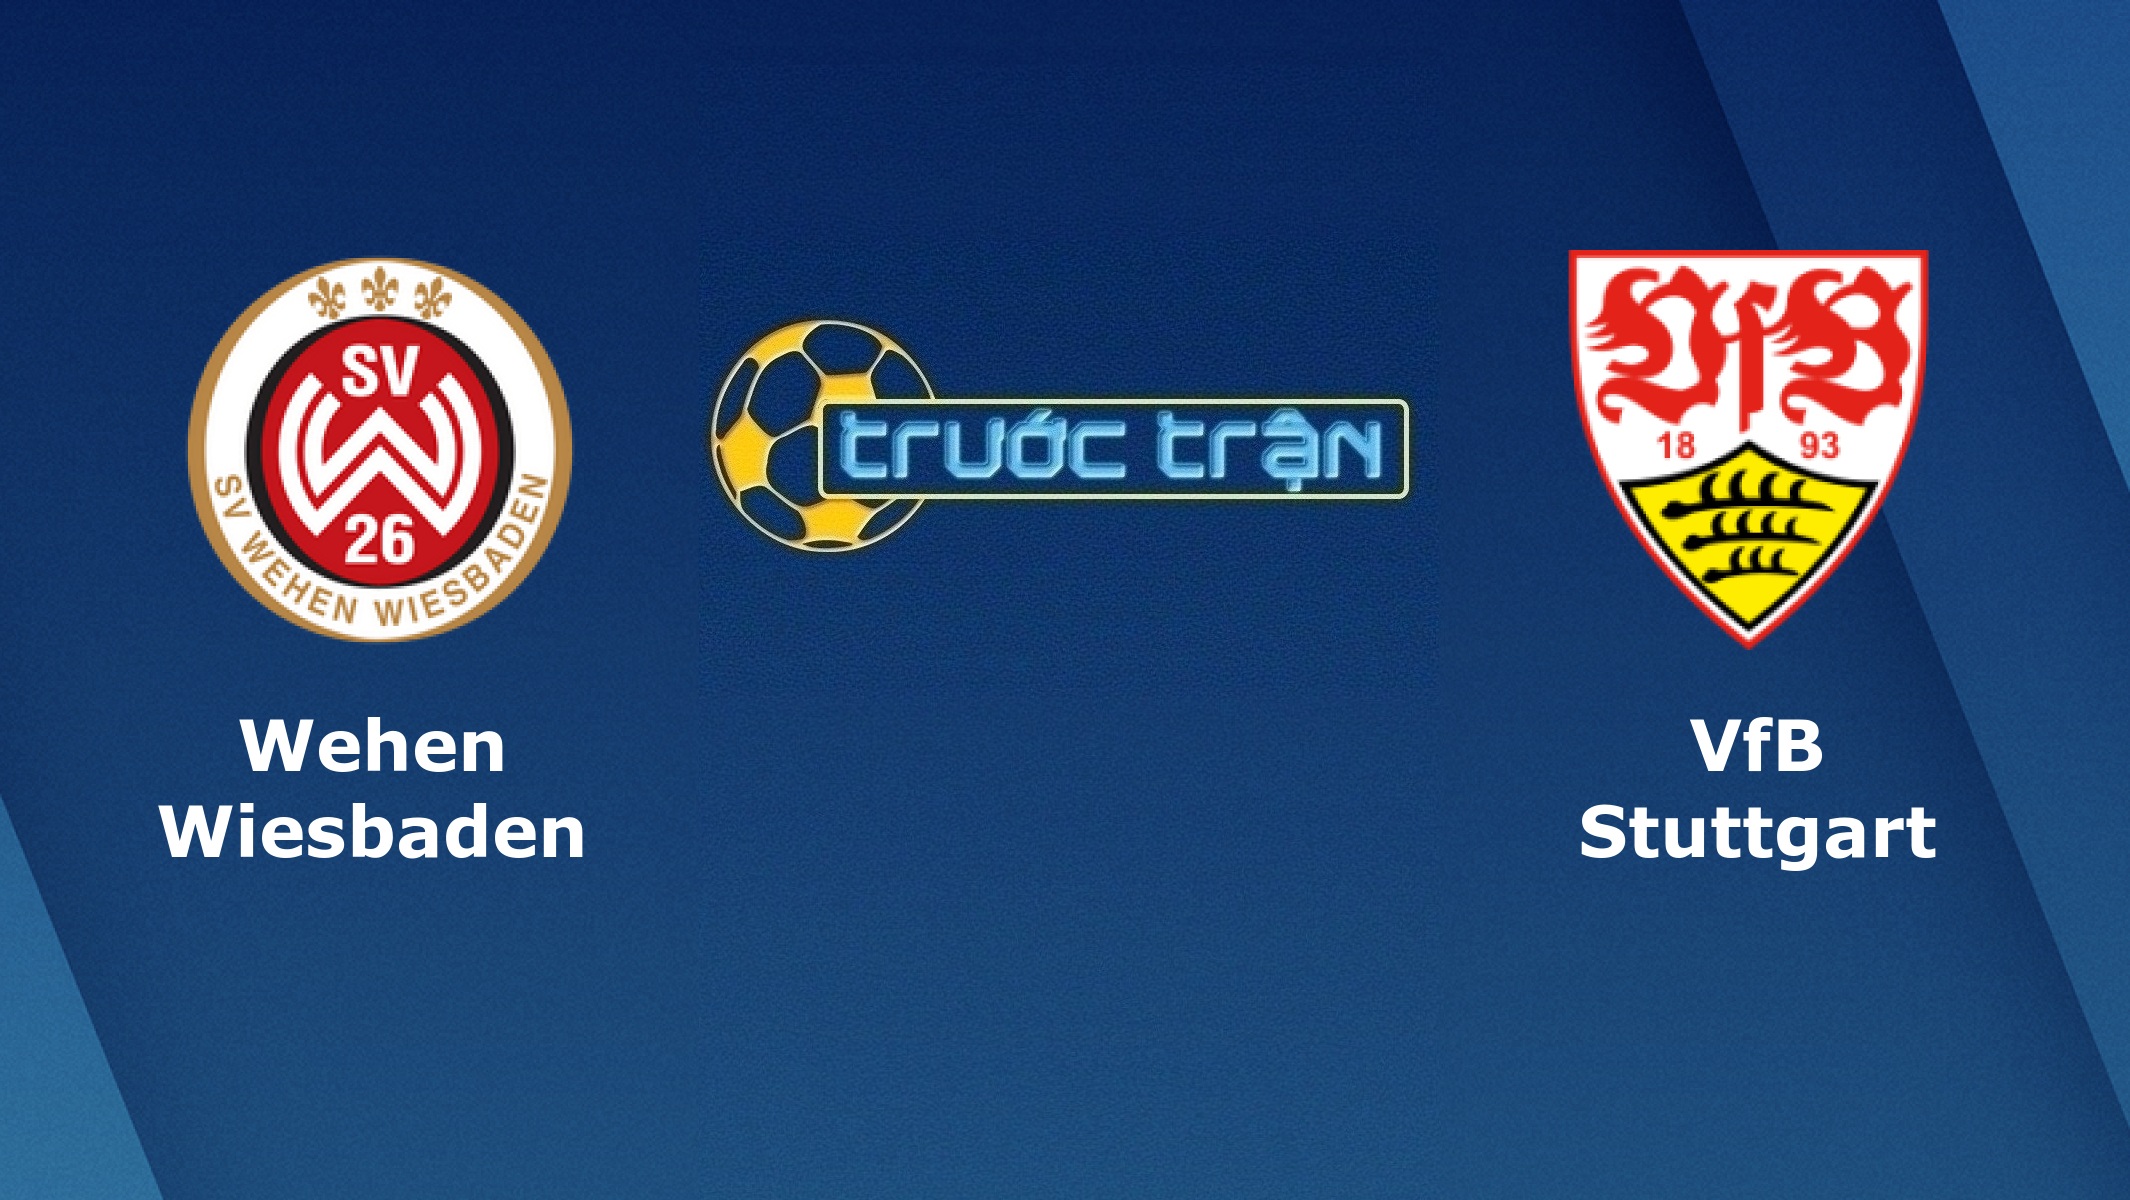 Wehen Wiesbaden vs VfB Stuttgart – Tip kèo bóng đá hôm nay – 15/03